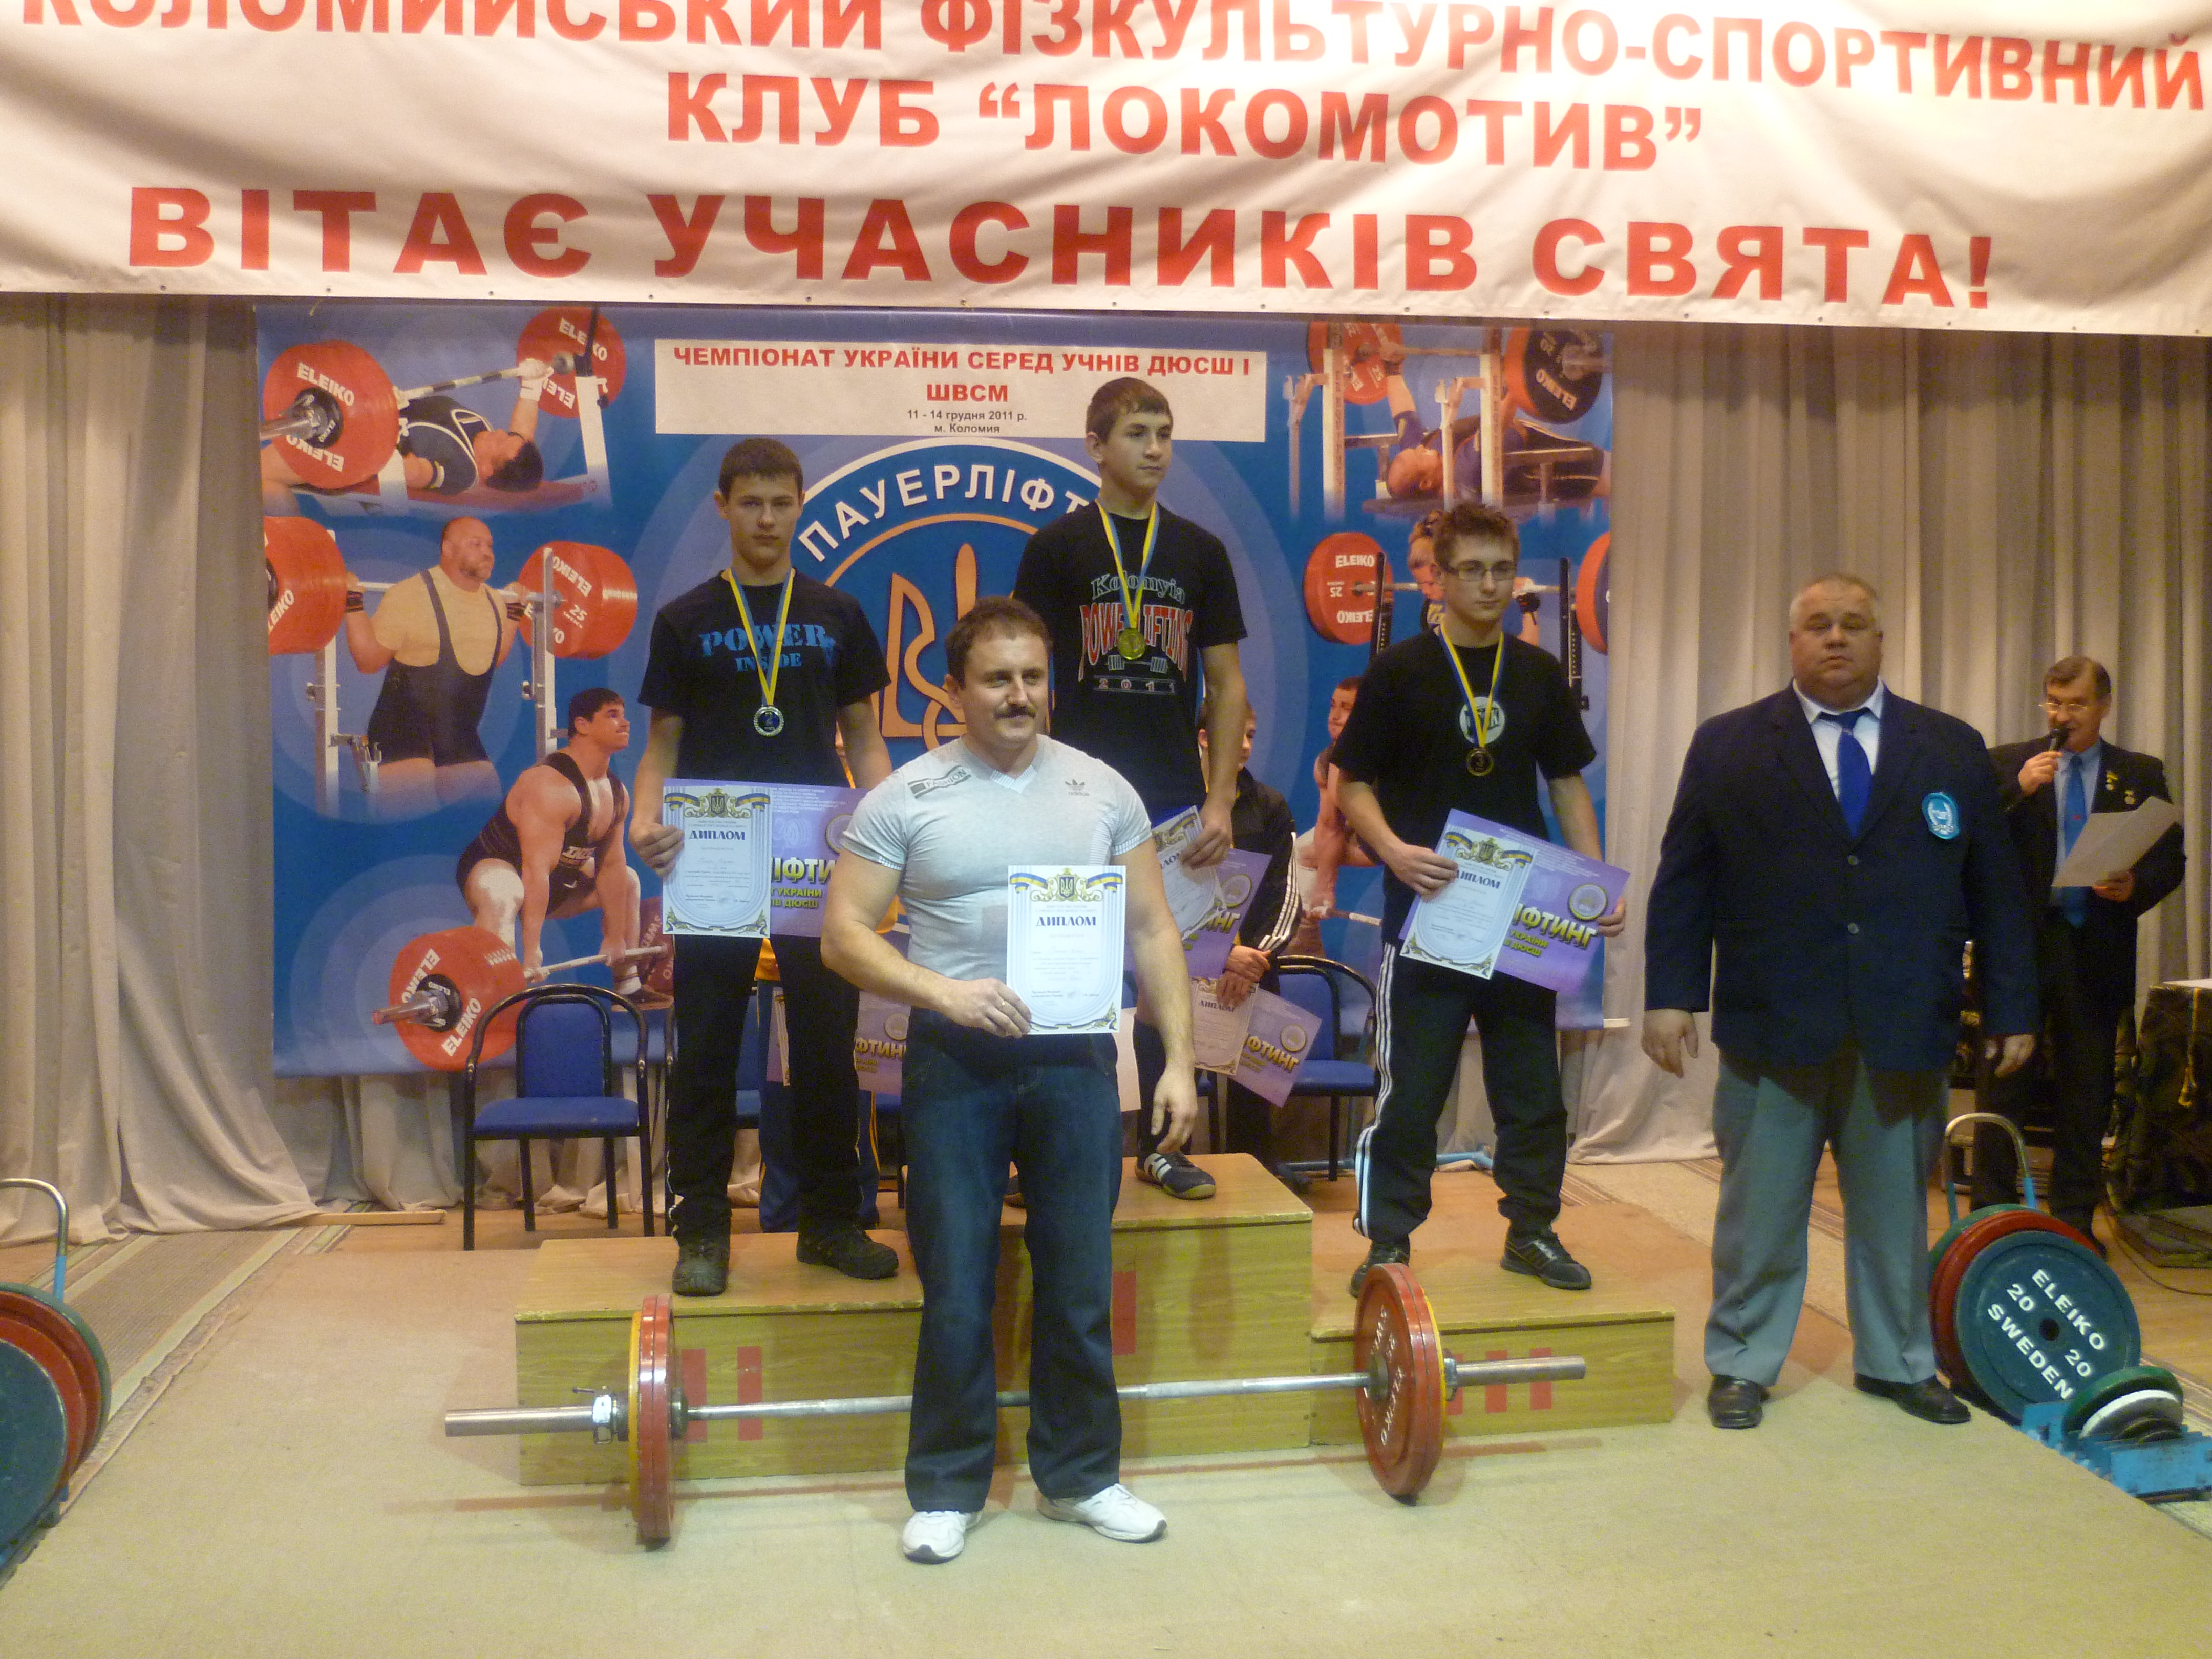 Измаильчане показали достойные результаты на Чемпионате Украины по пауэрлифтингу